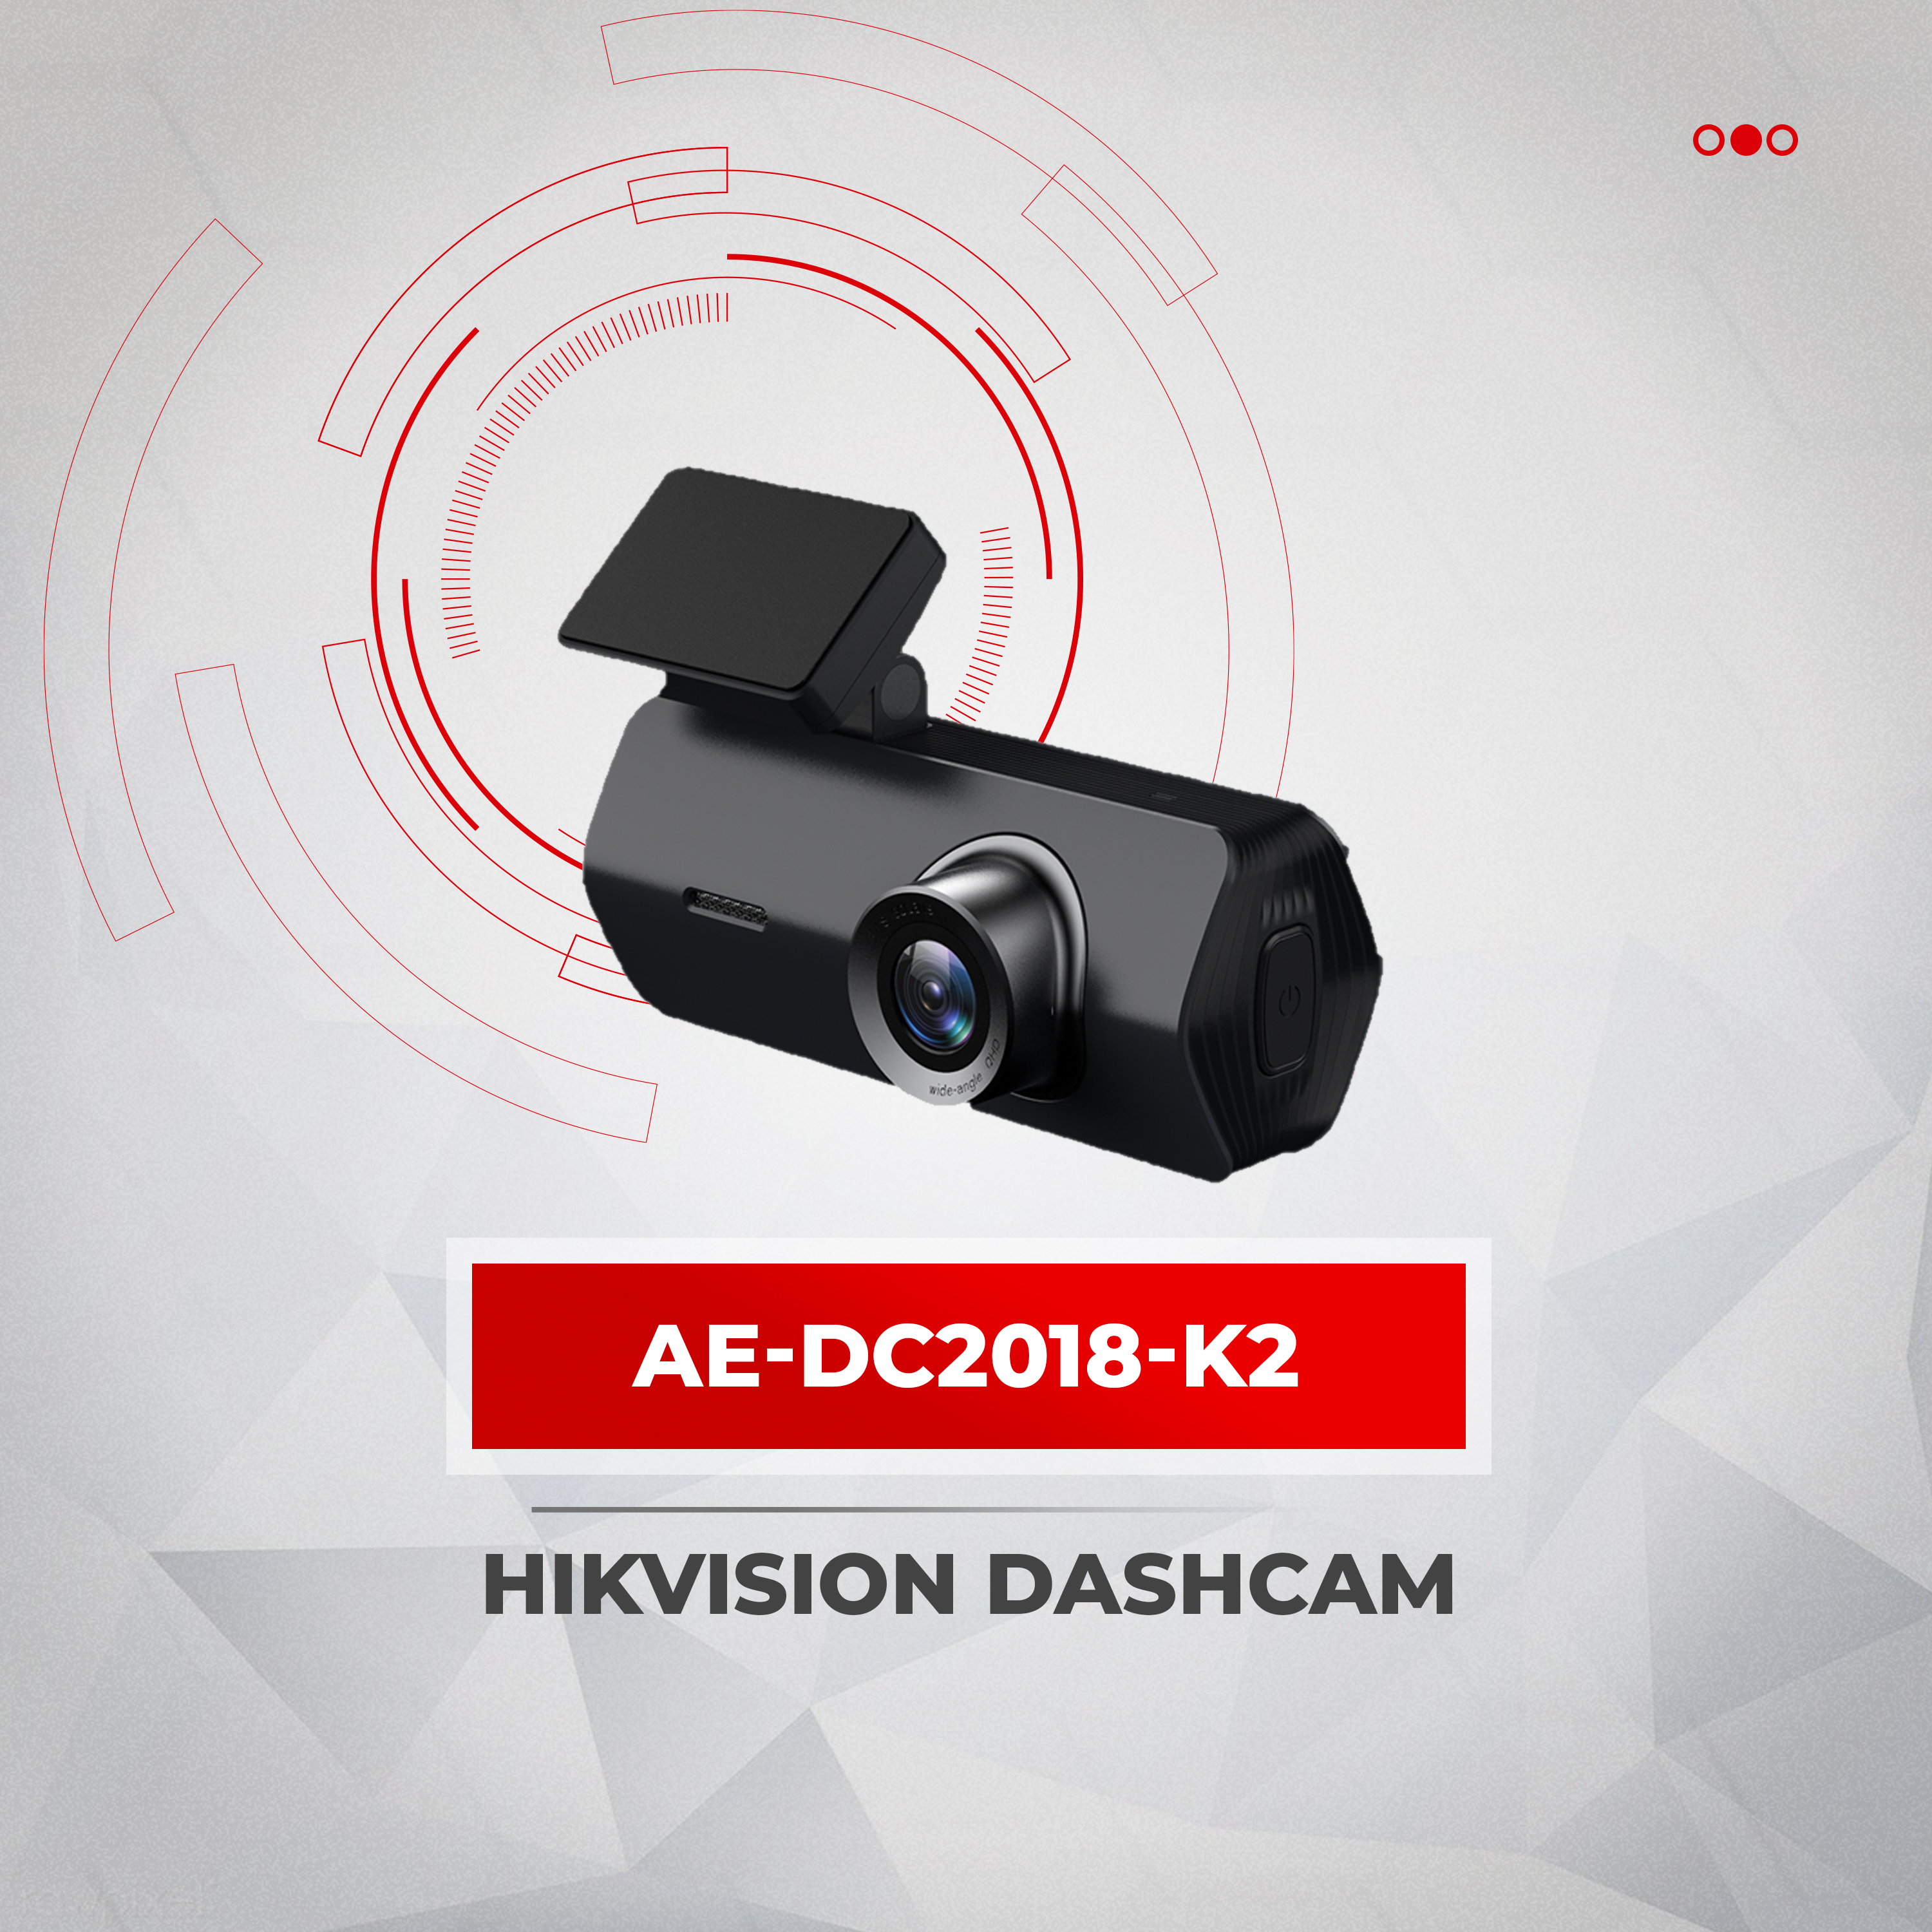 Hikvision Dashcam